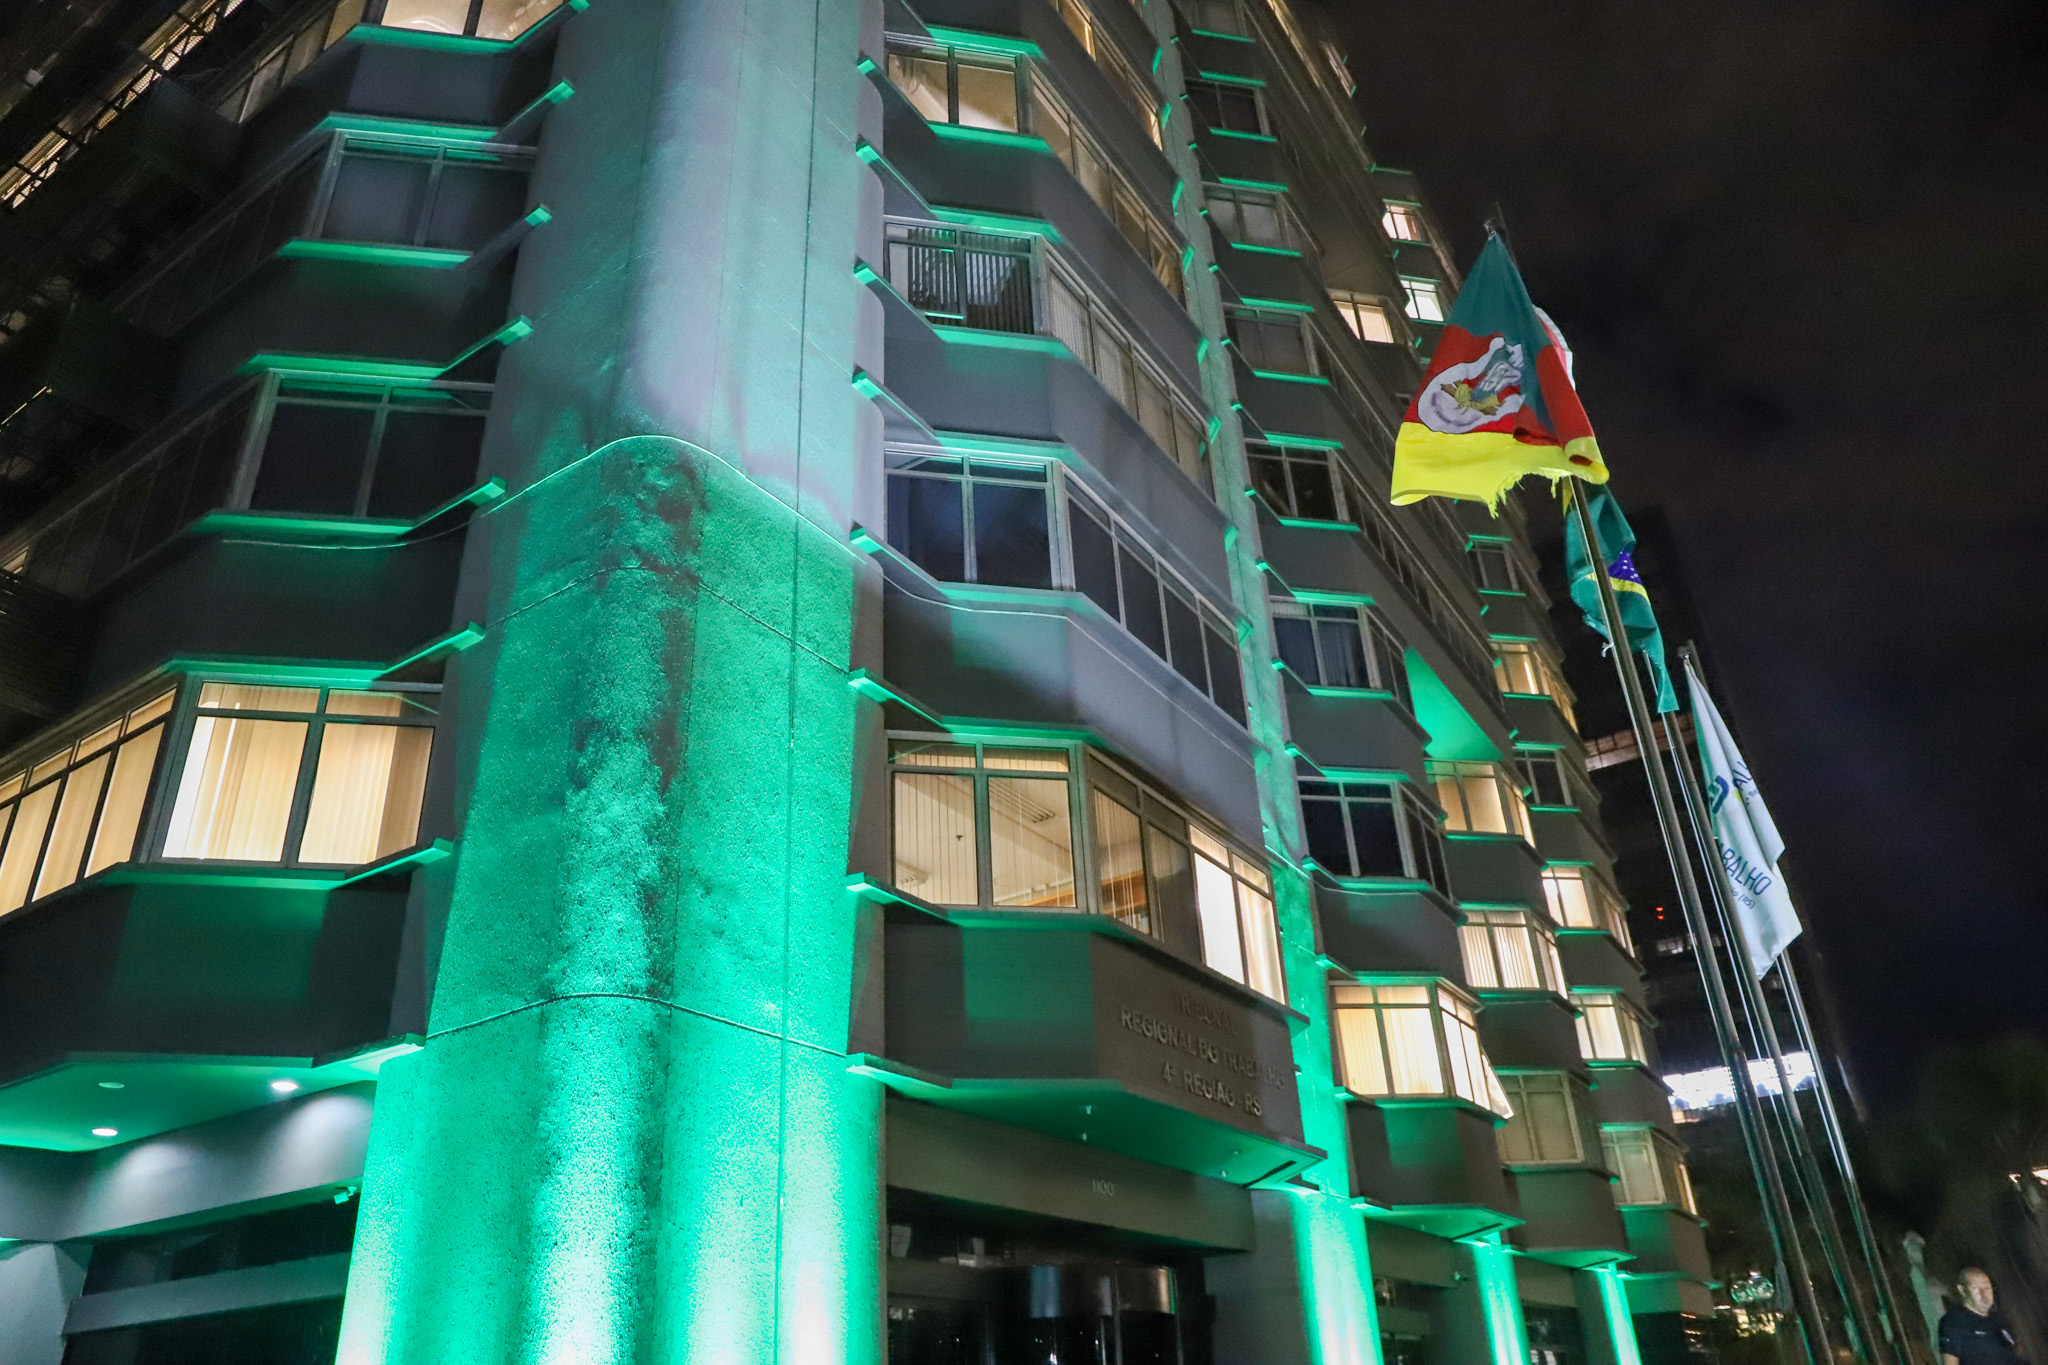 Foto do prédio do TRT-4 iluminado de verde.